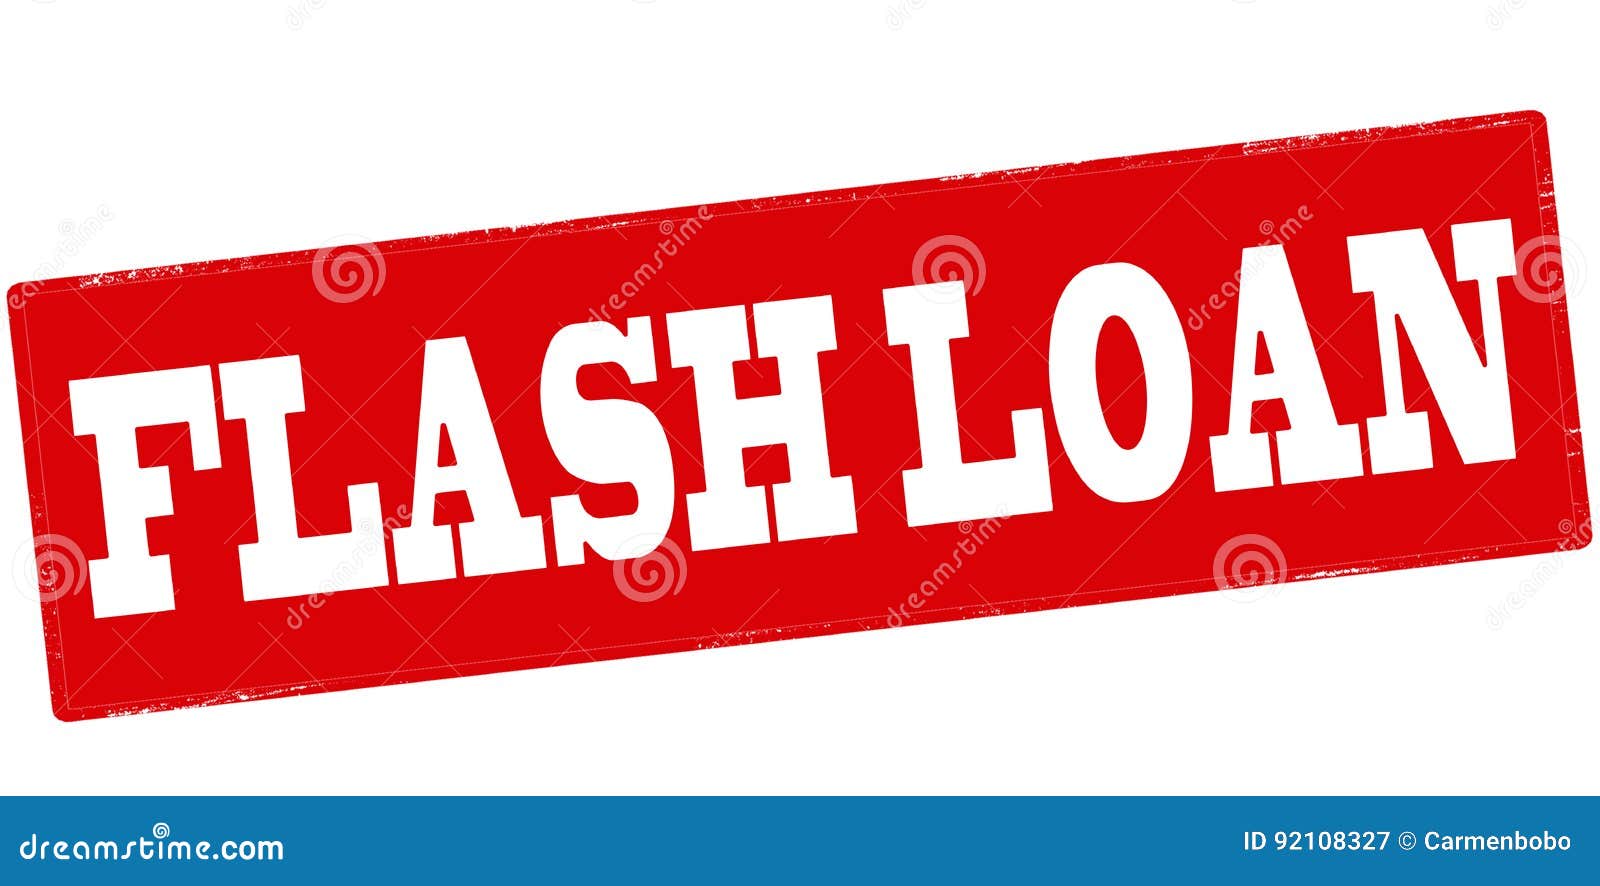 Flash Loan Rubber Stamp Vector Illustration | CartoonDealer.com #87580236